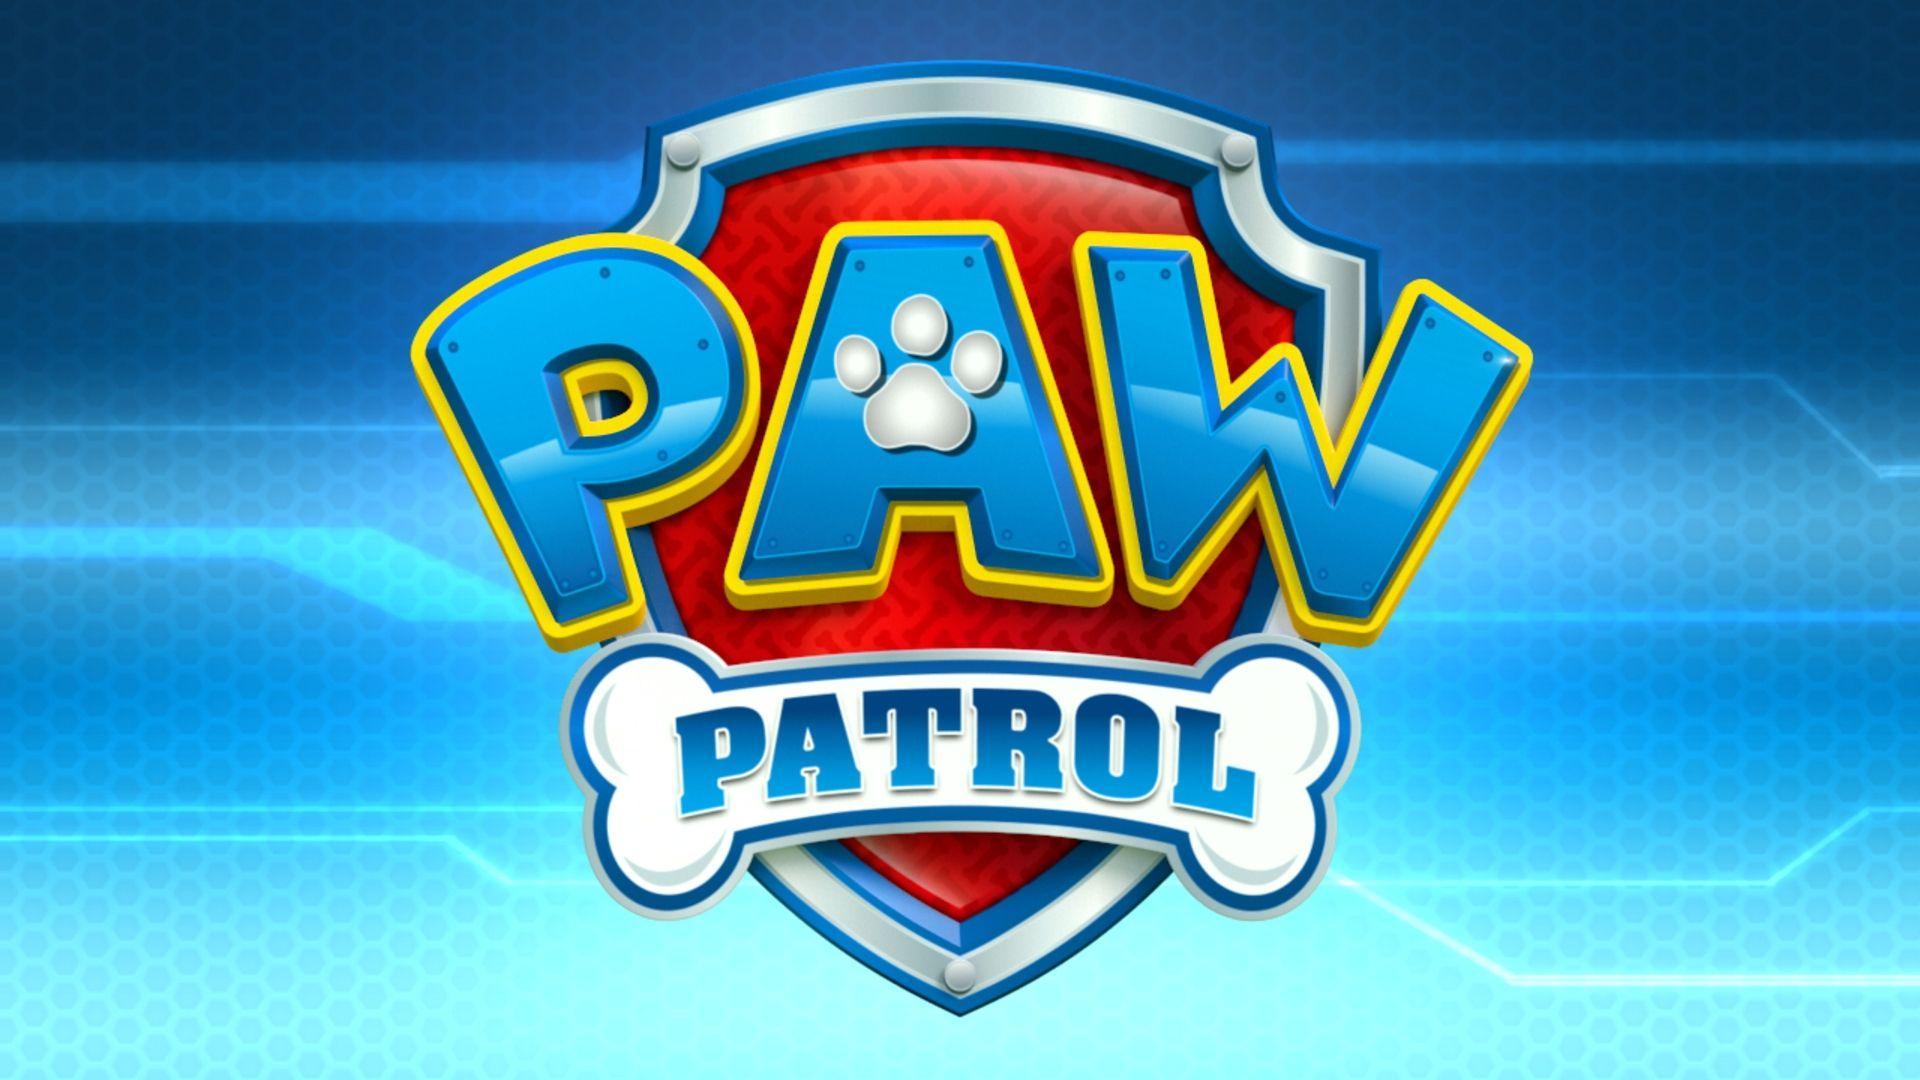 paw patrol logo wallpapers - top free paw patrol logo